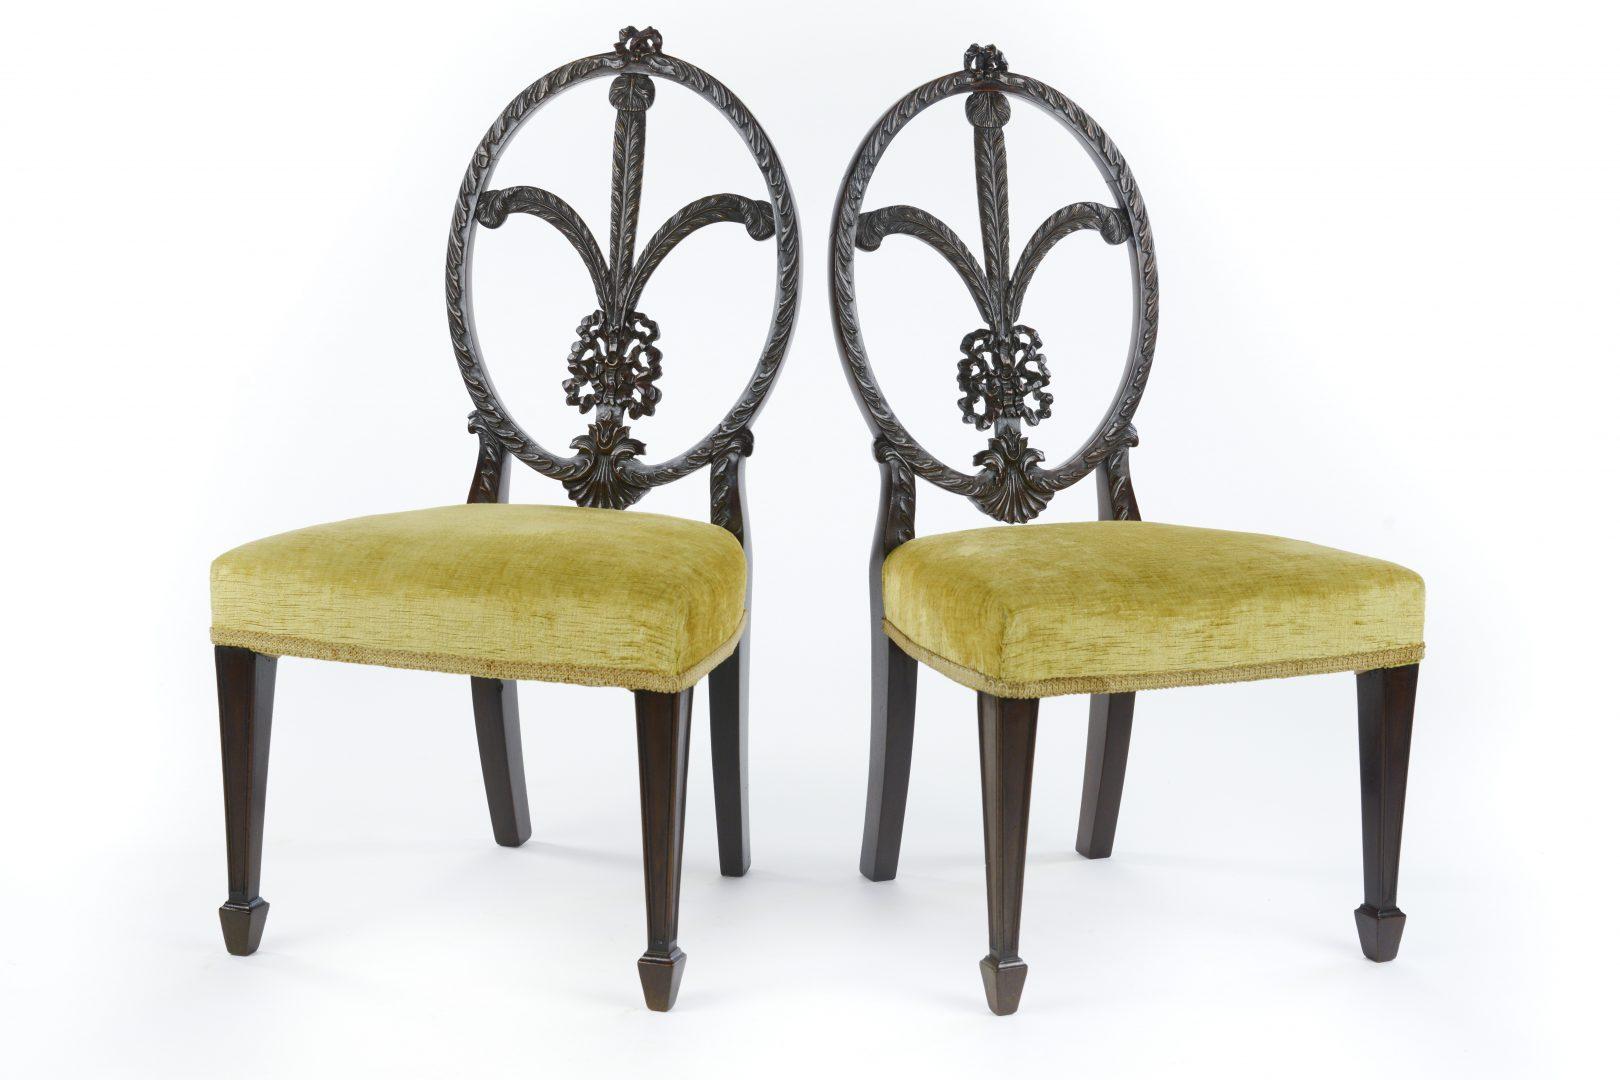 British Pair of Sheraton Style Children’s Chairs